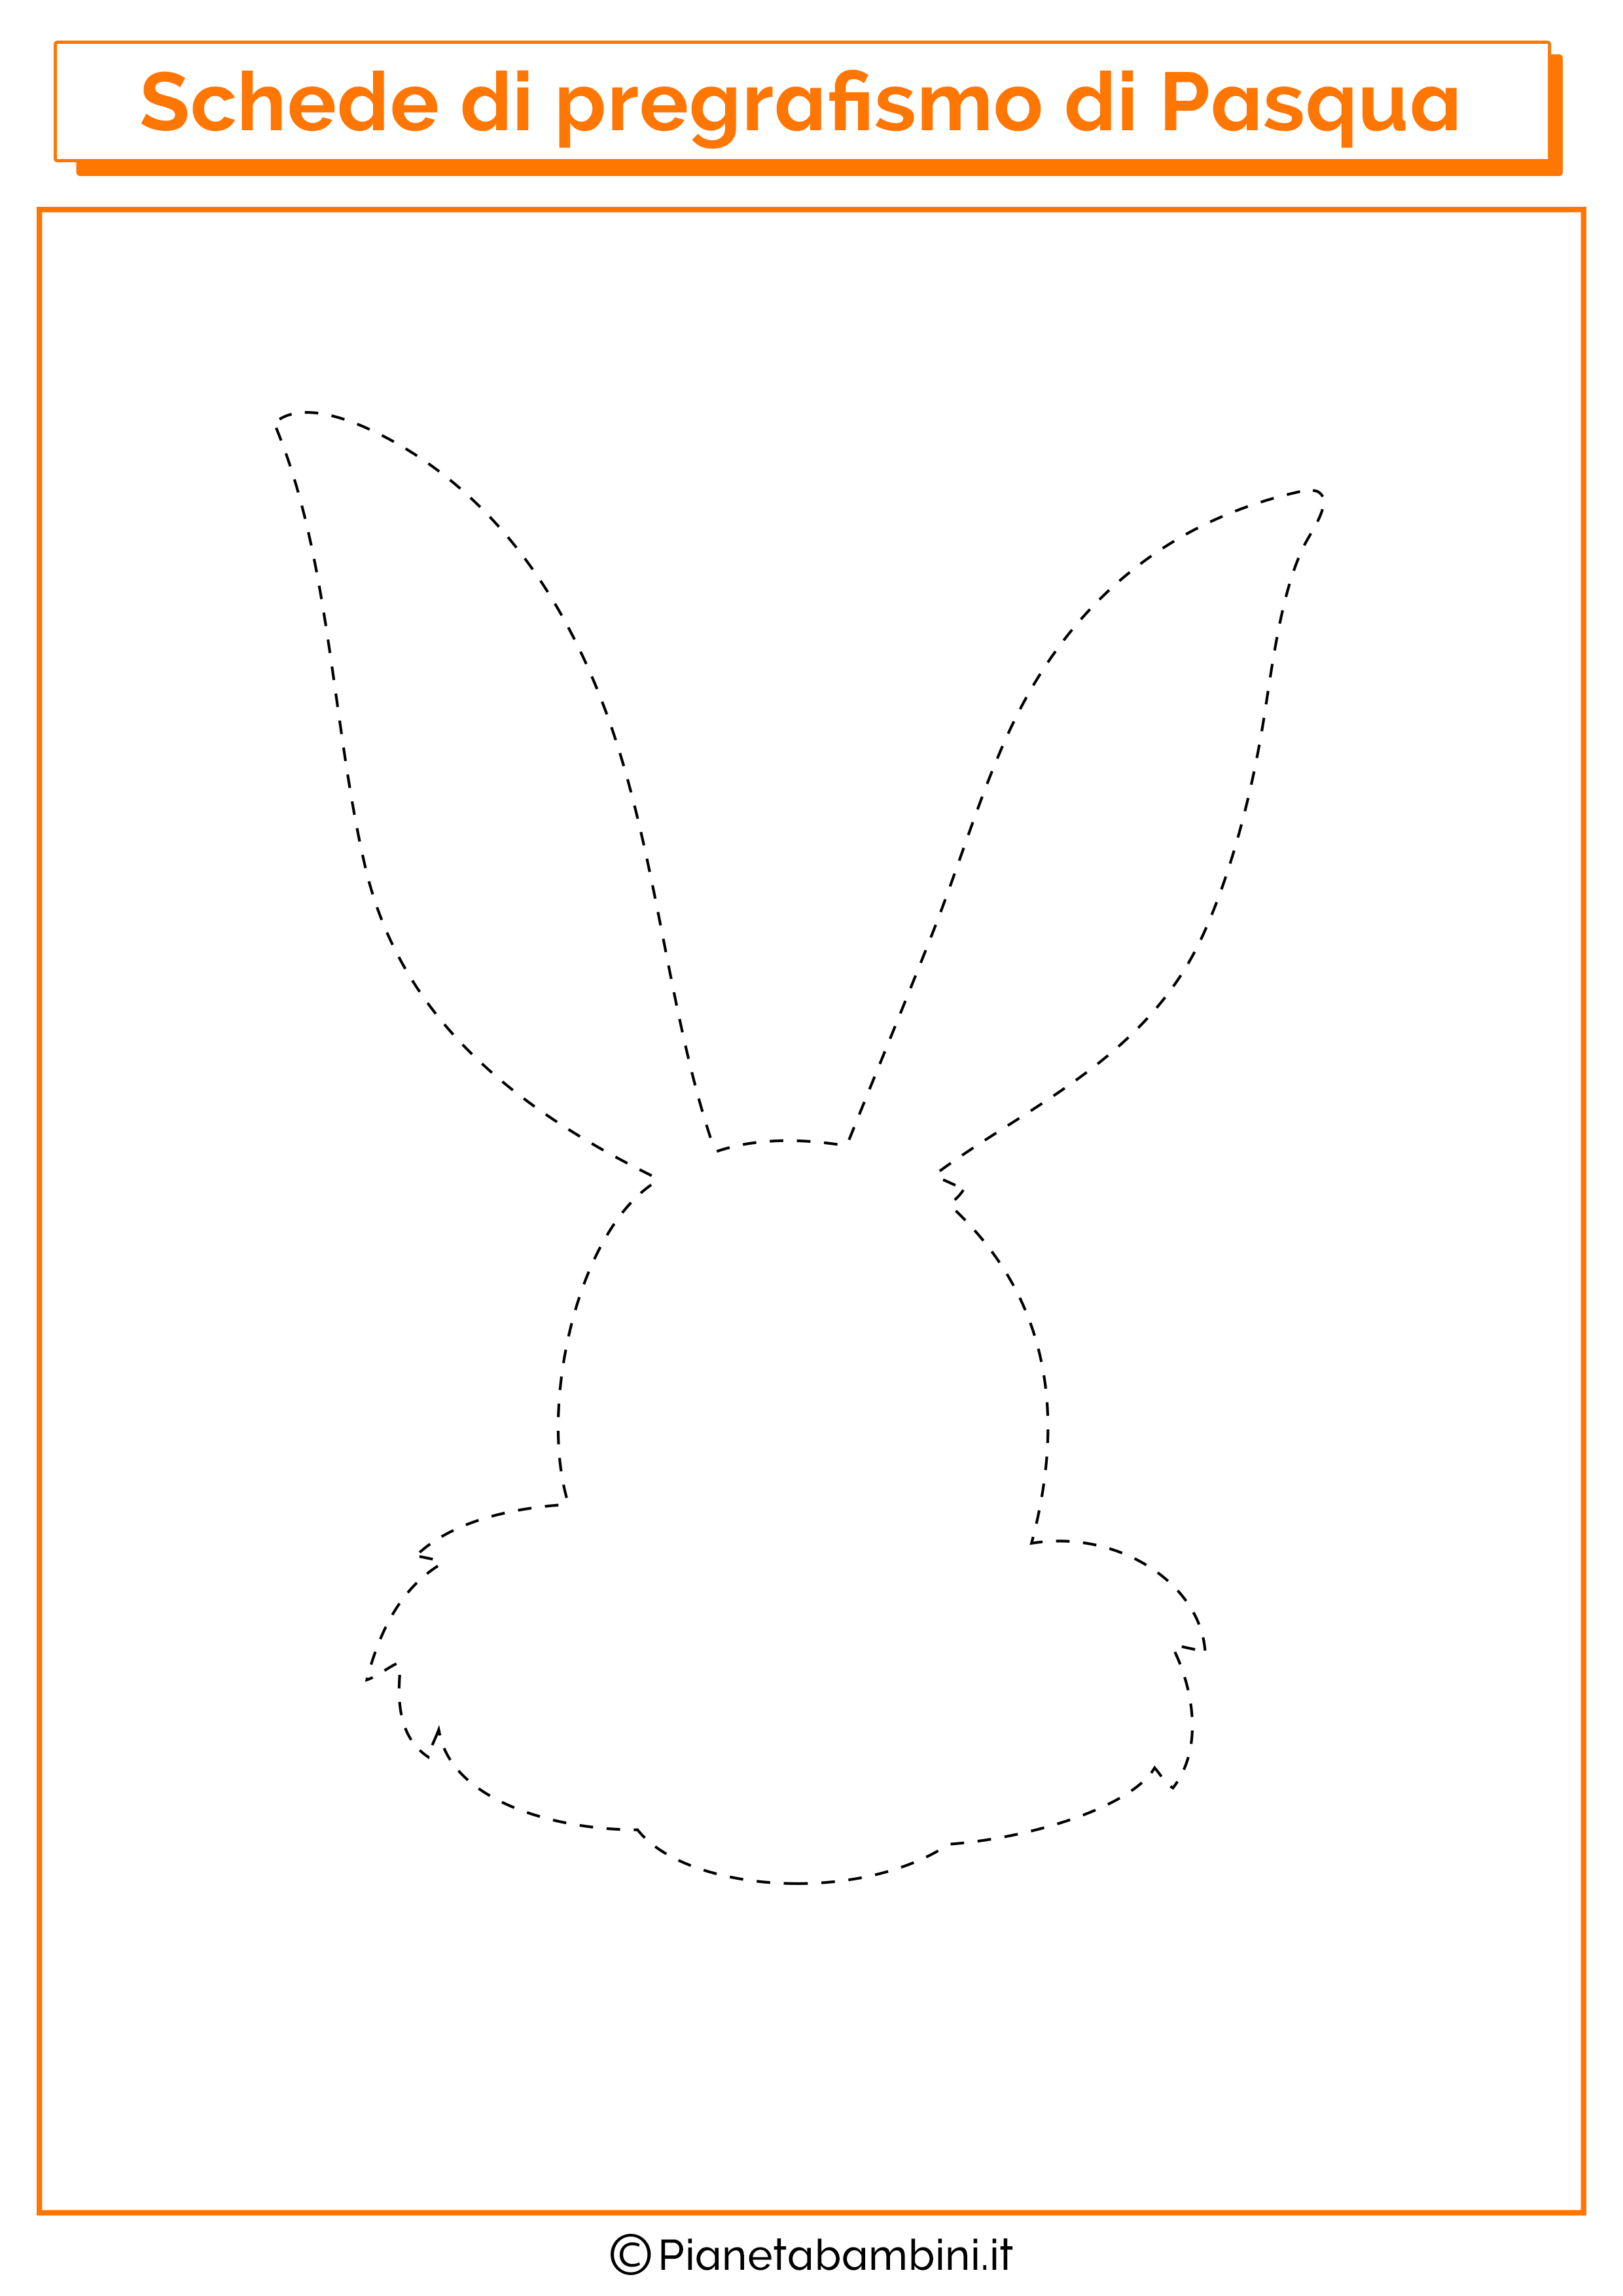 Scheda di pregrafismo di Pasqua sul viso del coniglietto